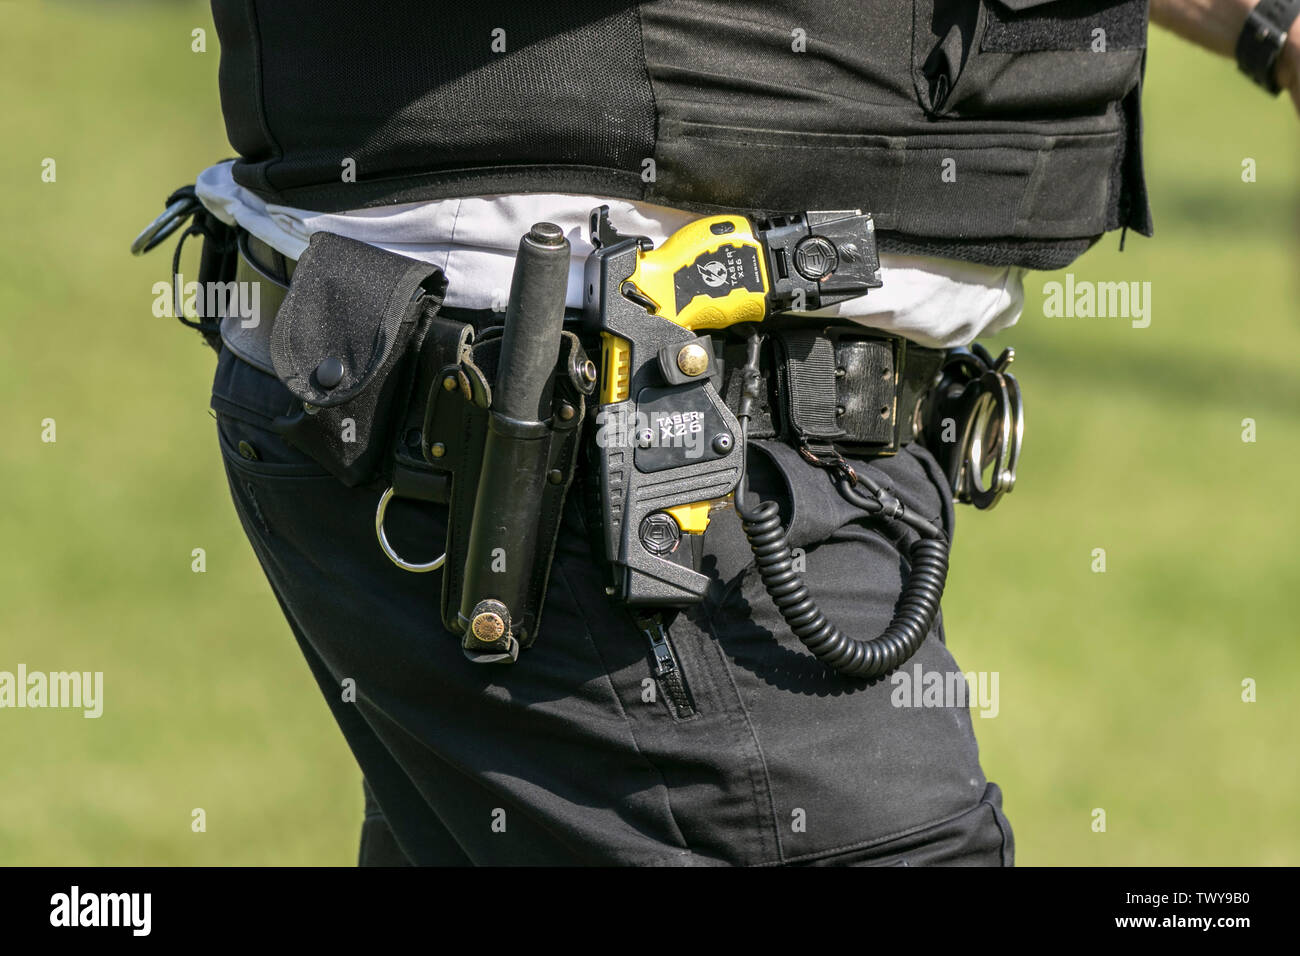 Eine britische bewaffnete Polizisten tragen ein Taser Elektroschocker als Standard Schutzausrüstung kriminelle Angriffe auf Polizeibeamte abhalten Stockfoto